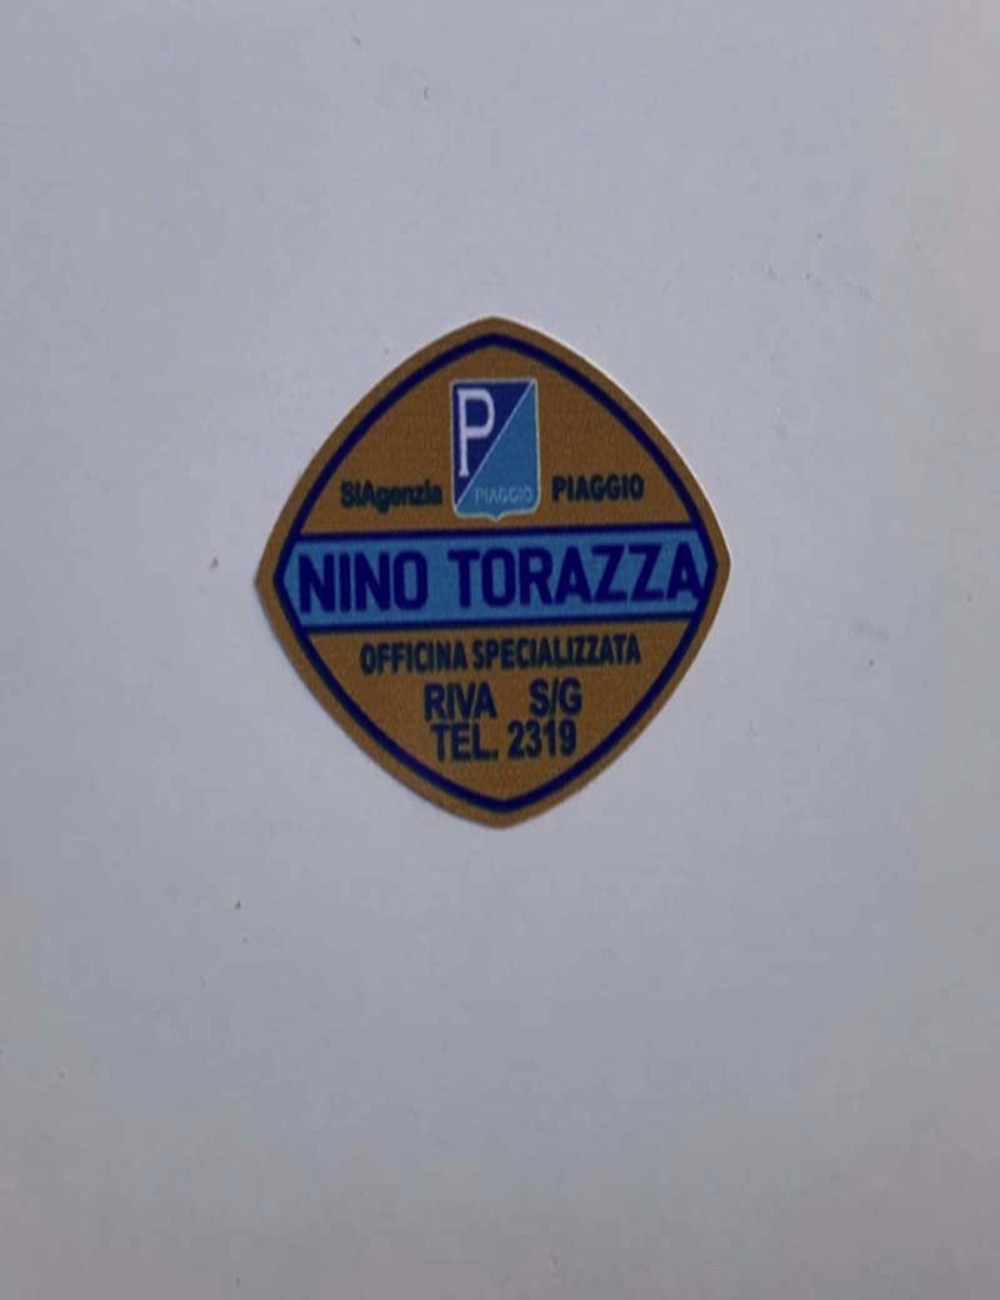 Adesivo concessionario Nino Torazza. Dimensioni 5 cm x 3,8 cm.